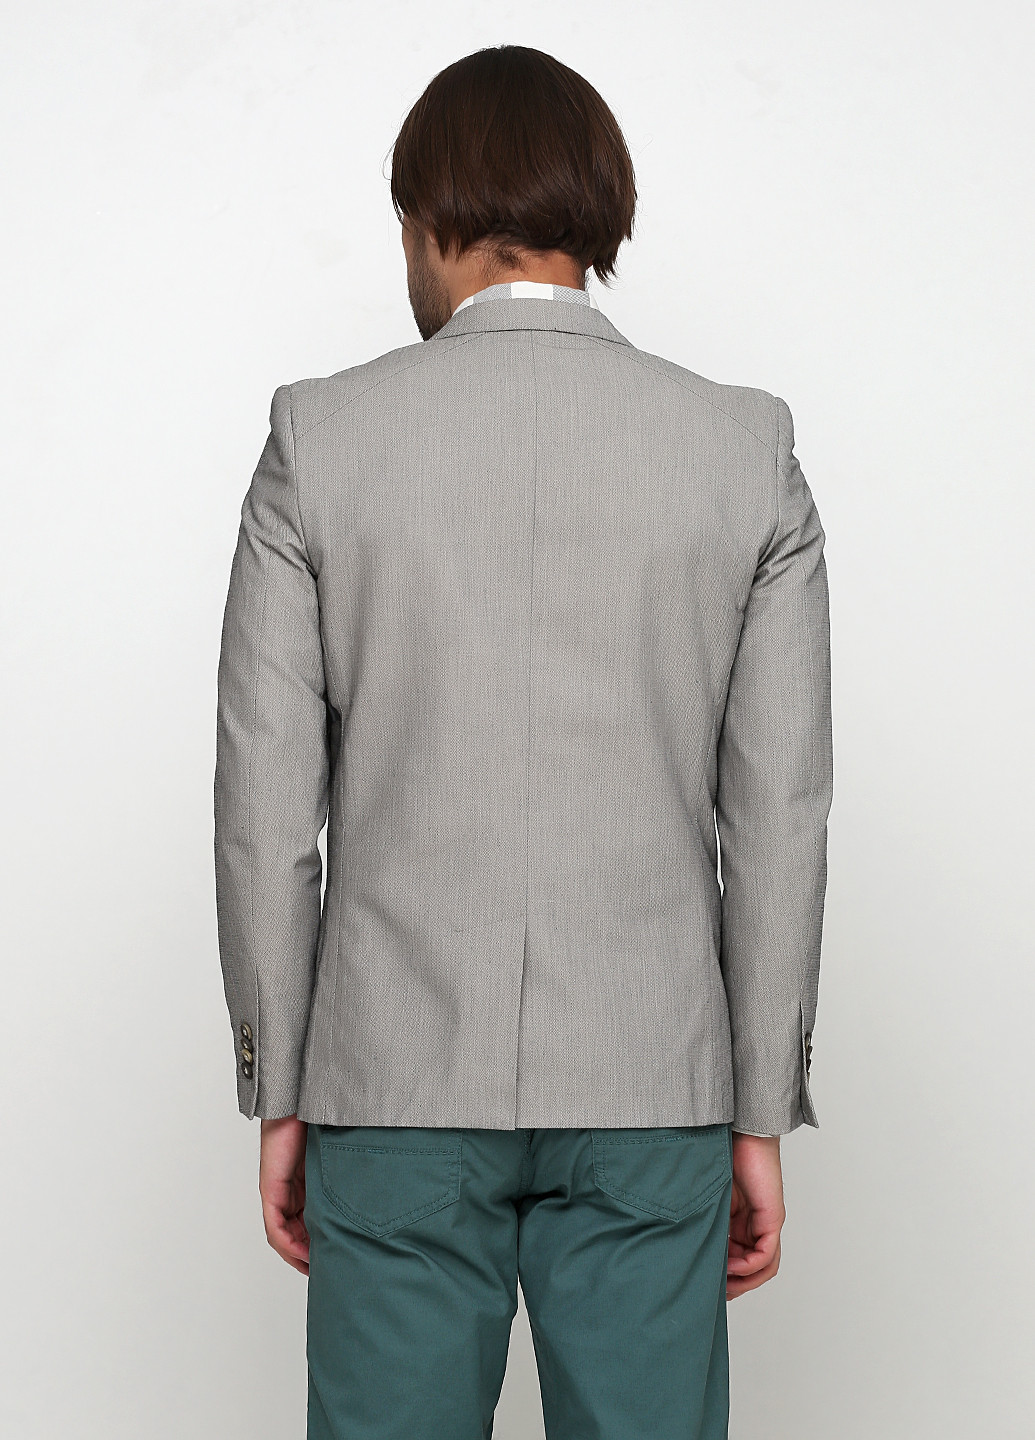 Пиджак Intelligent серый деловой полиэстер